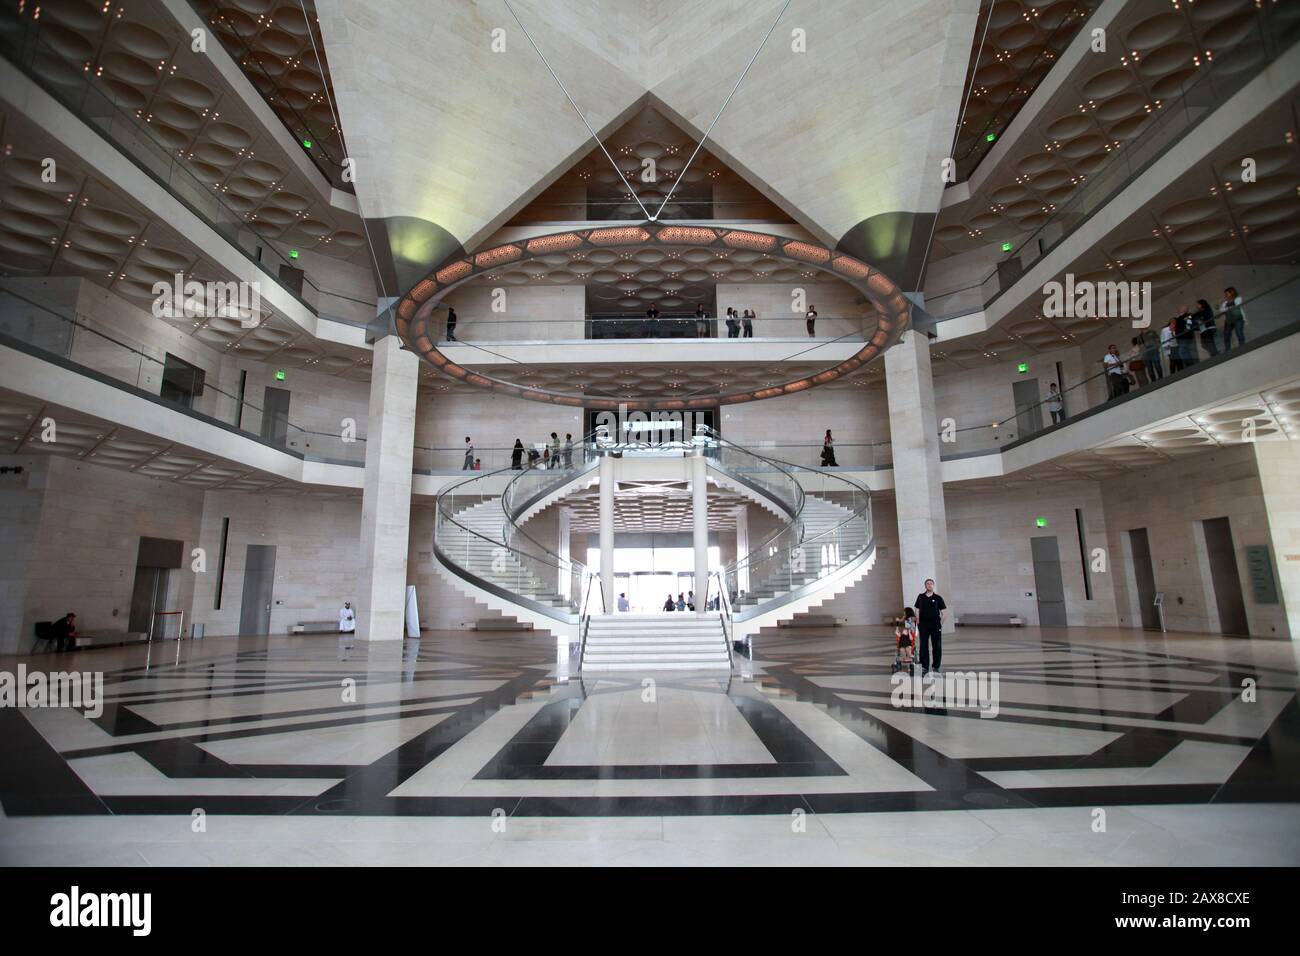 El Museo de Arte Islámico en Doha Qatar por I.M. Pei. Foto de stock